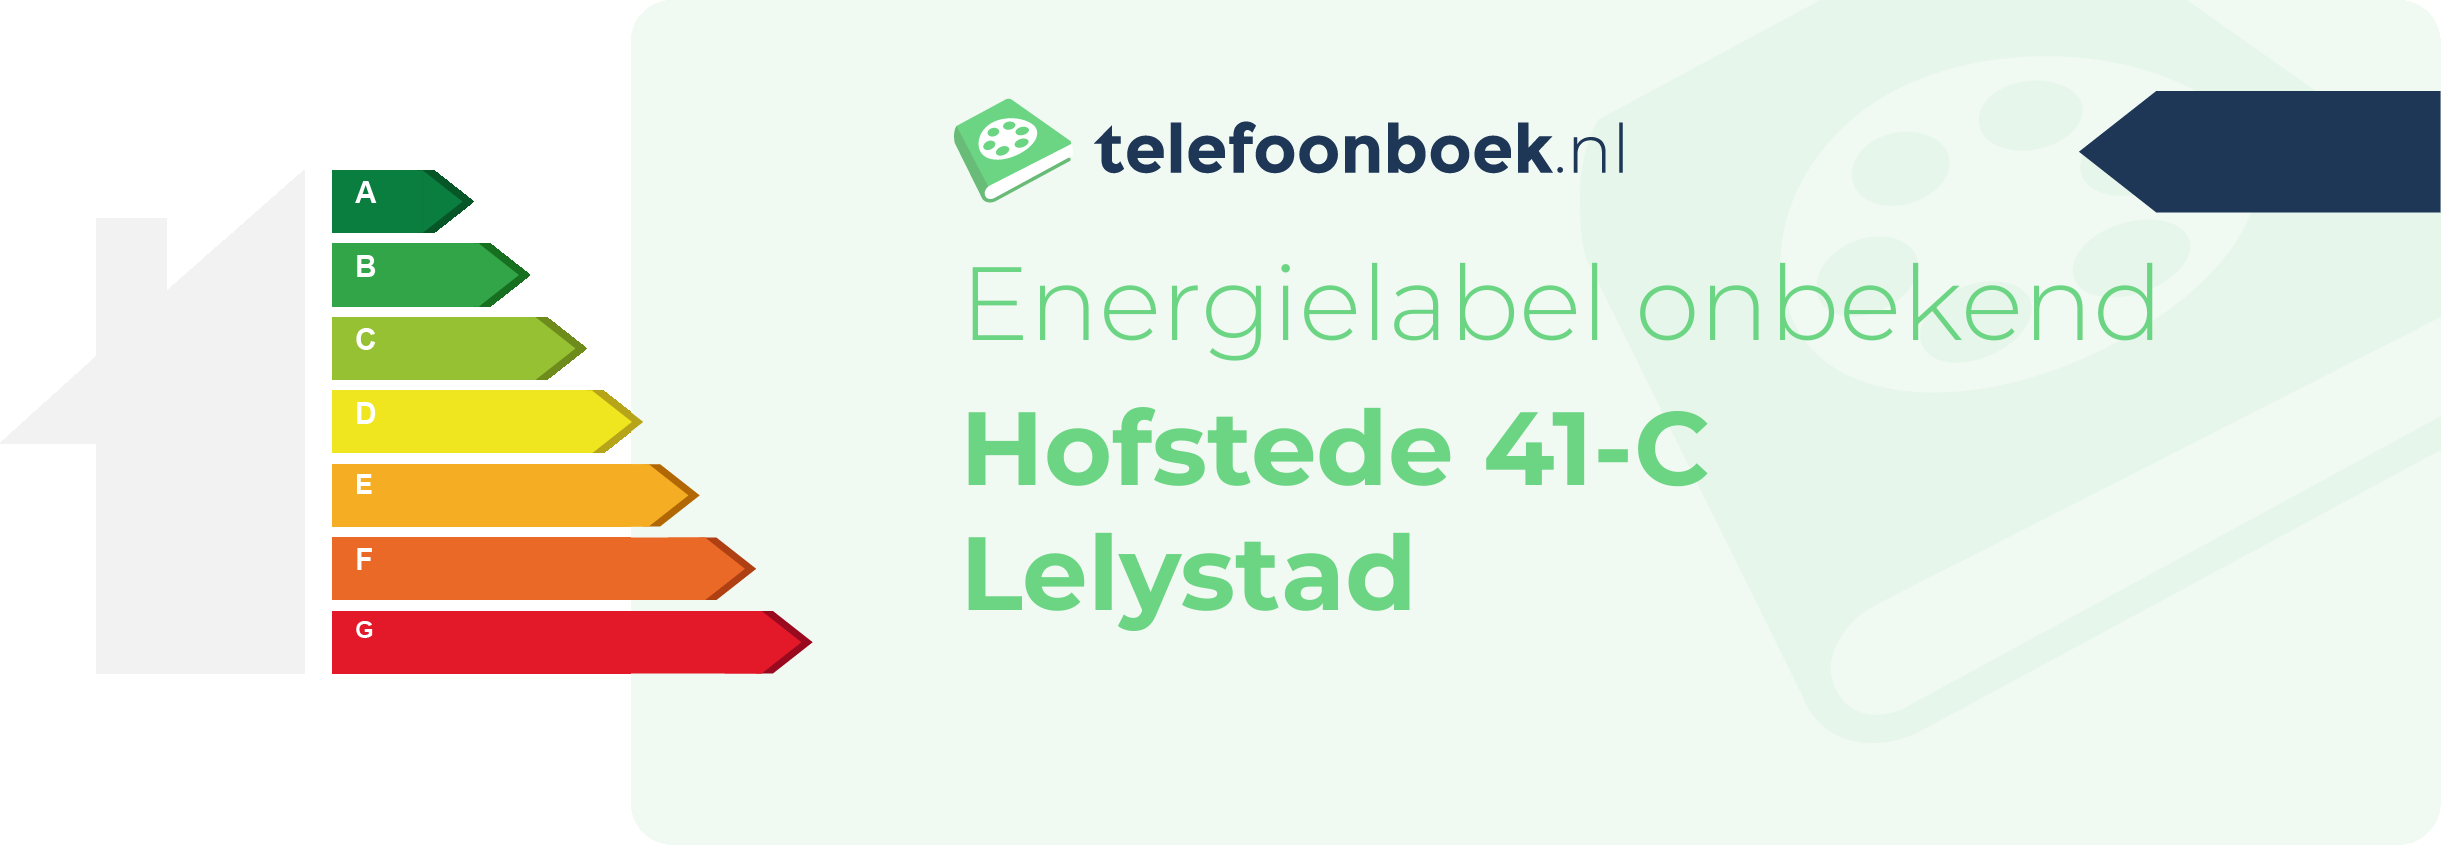 Energielabel Hofstede 41-C Lelystad